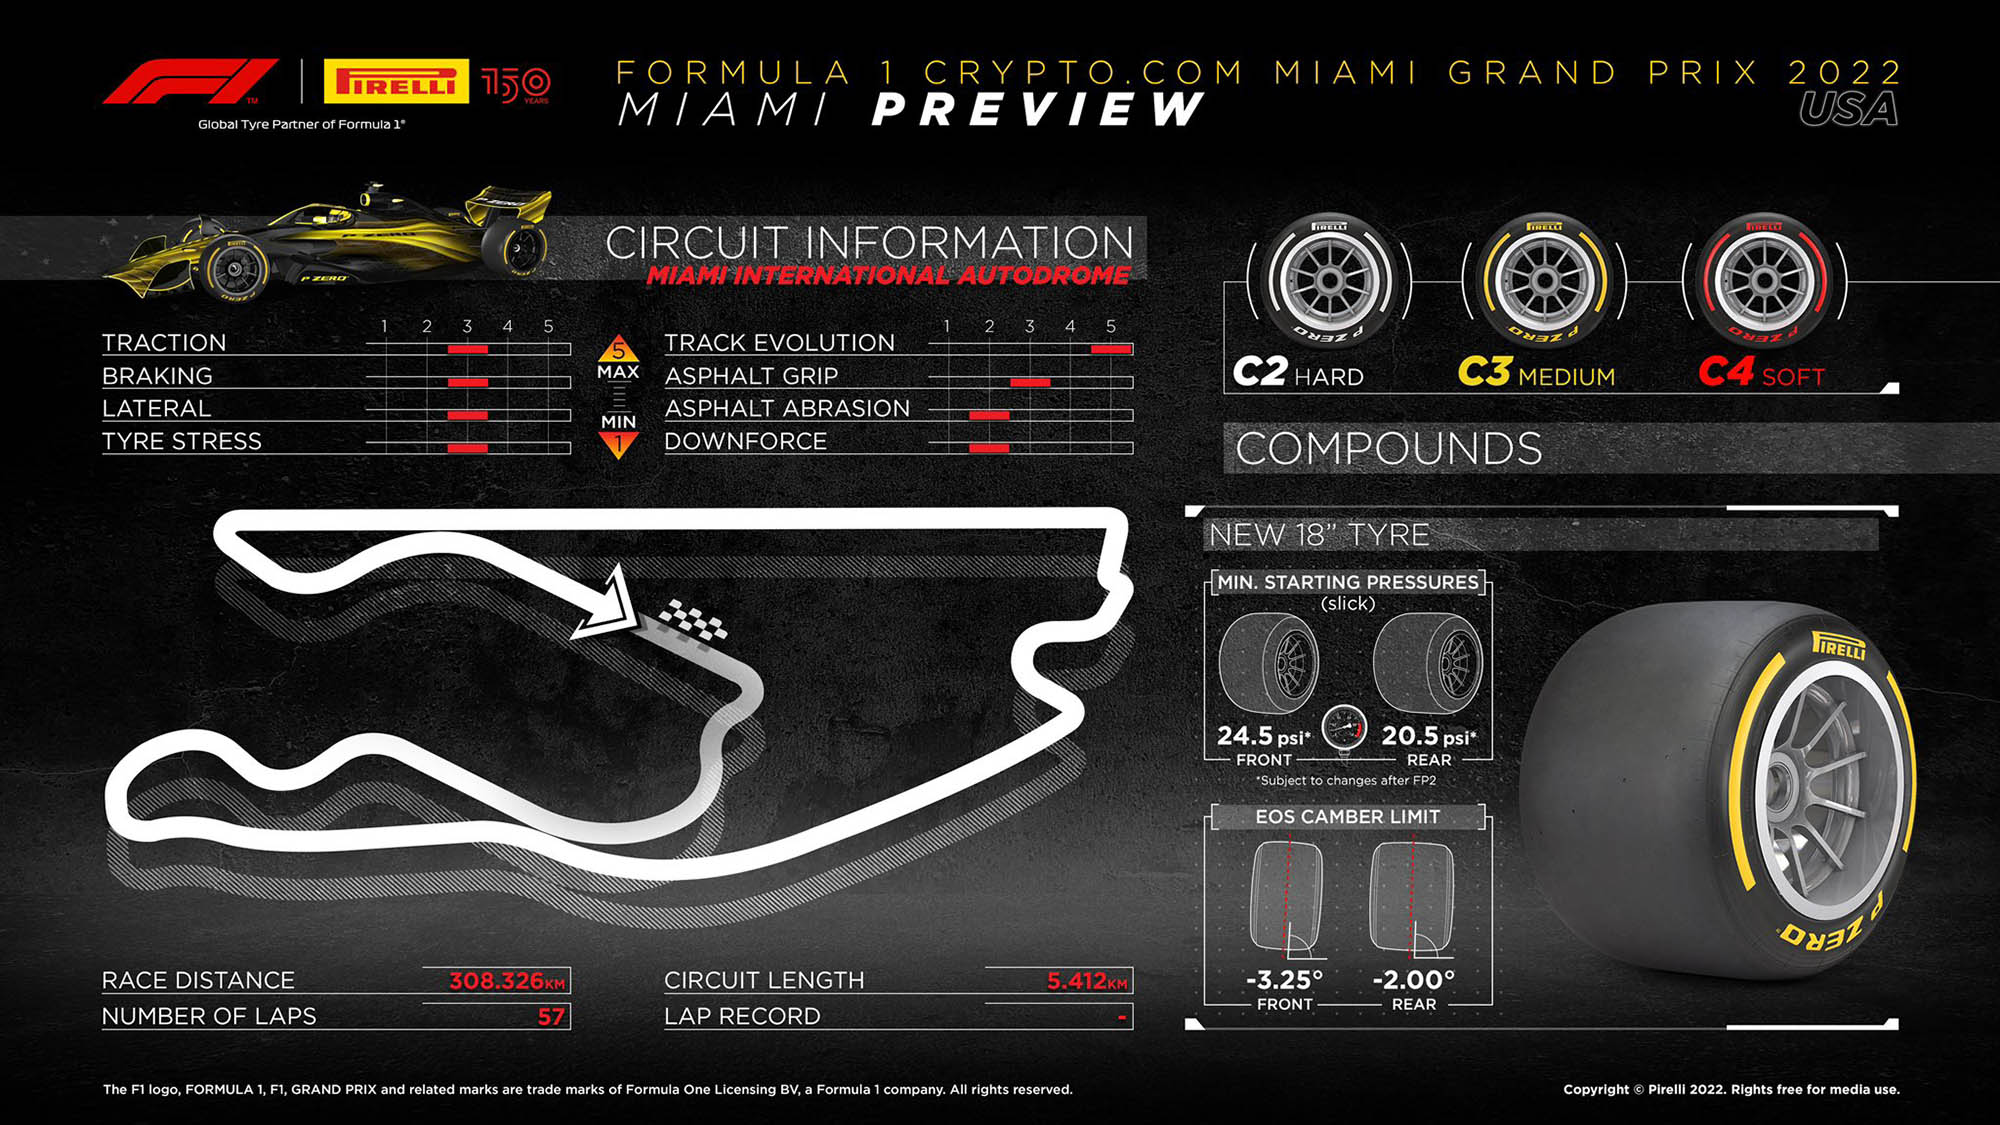 Miami GP Pirelli preview